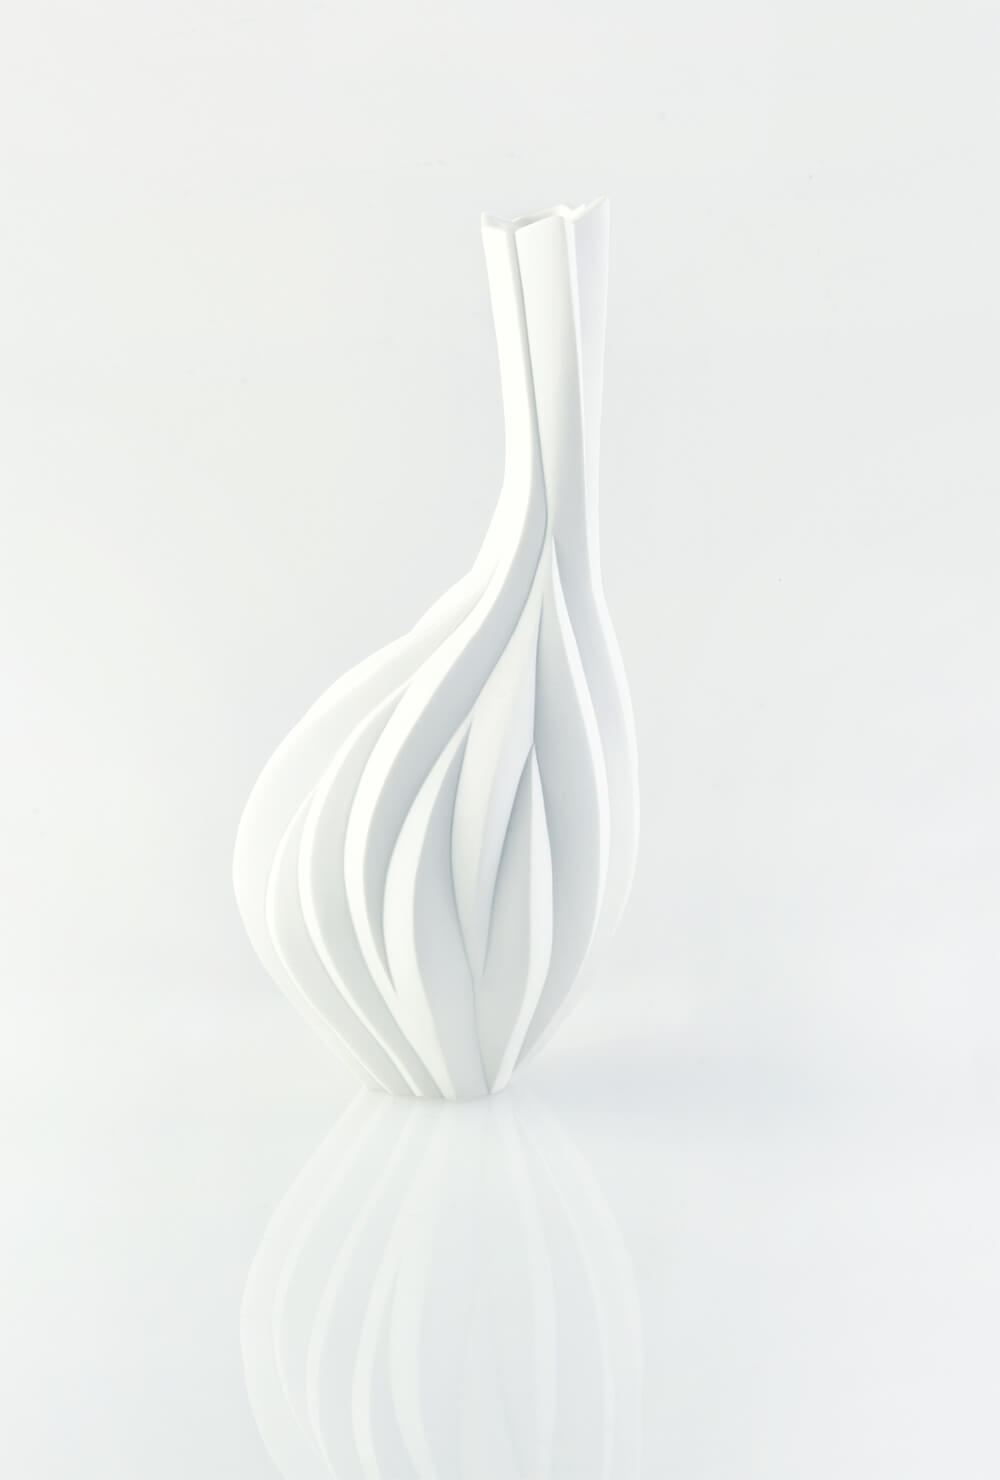 2019年5月18日から開催の「白磁の造形世界 高橋 奈己 陶展」の作品